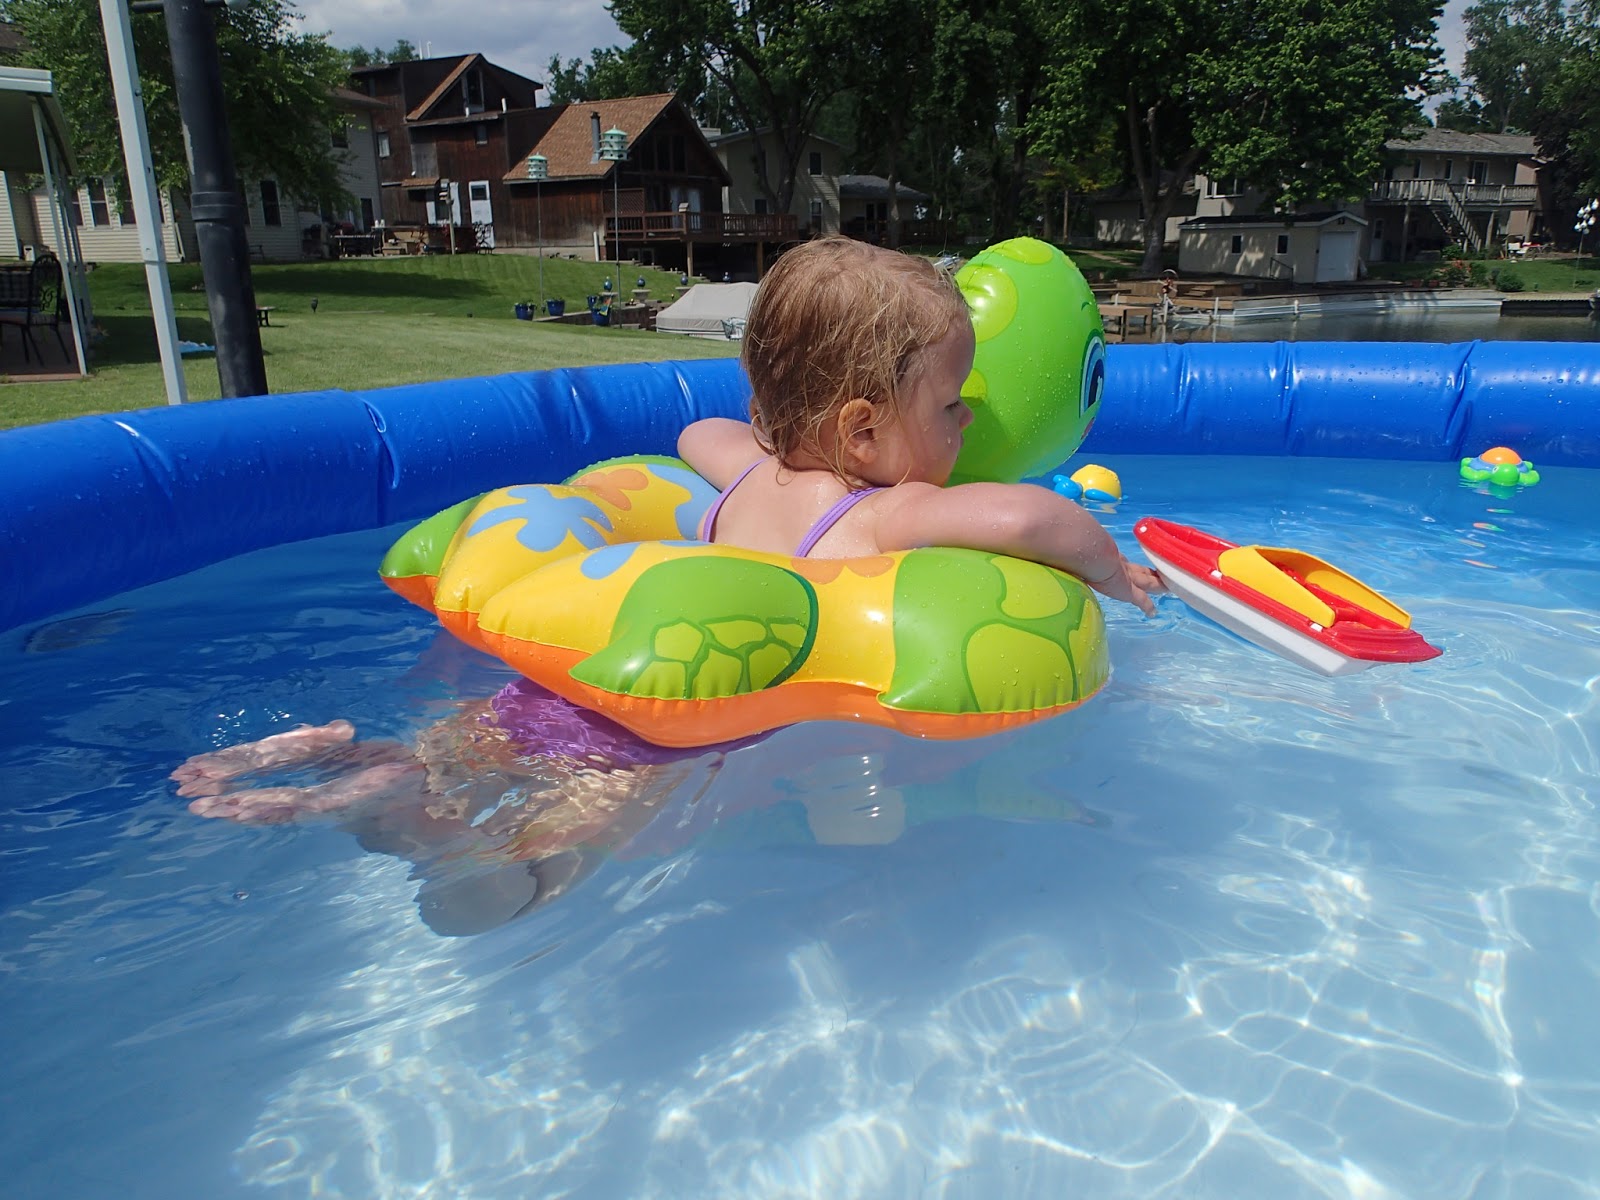 Dixson Family Fun!: Pool time fun!